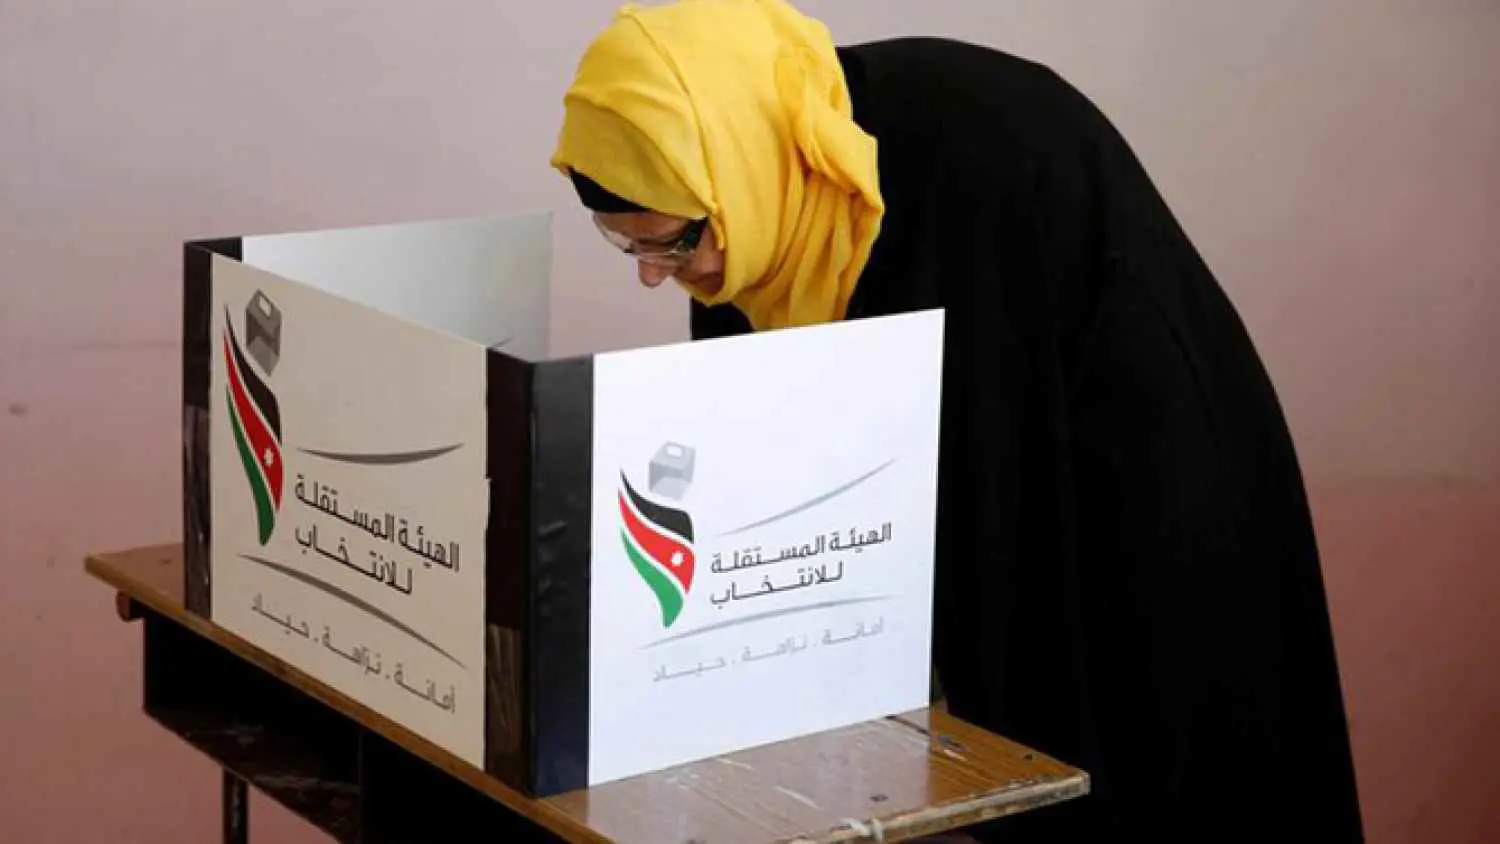 للمرة الأولى.. قائمة انتخابية "للنساء فقط" في الأردن (صورة)